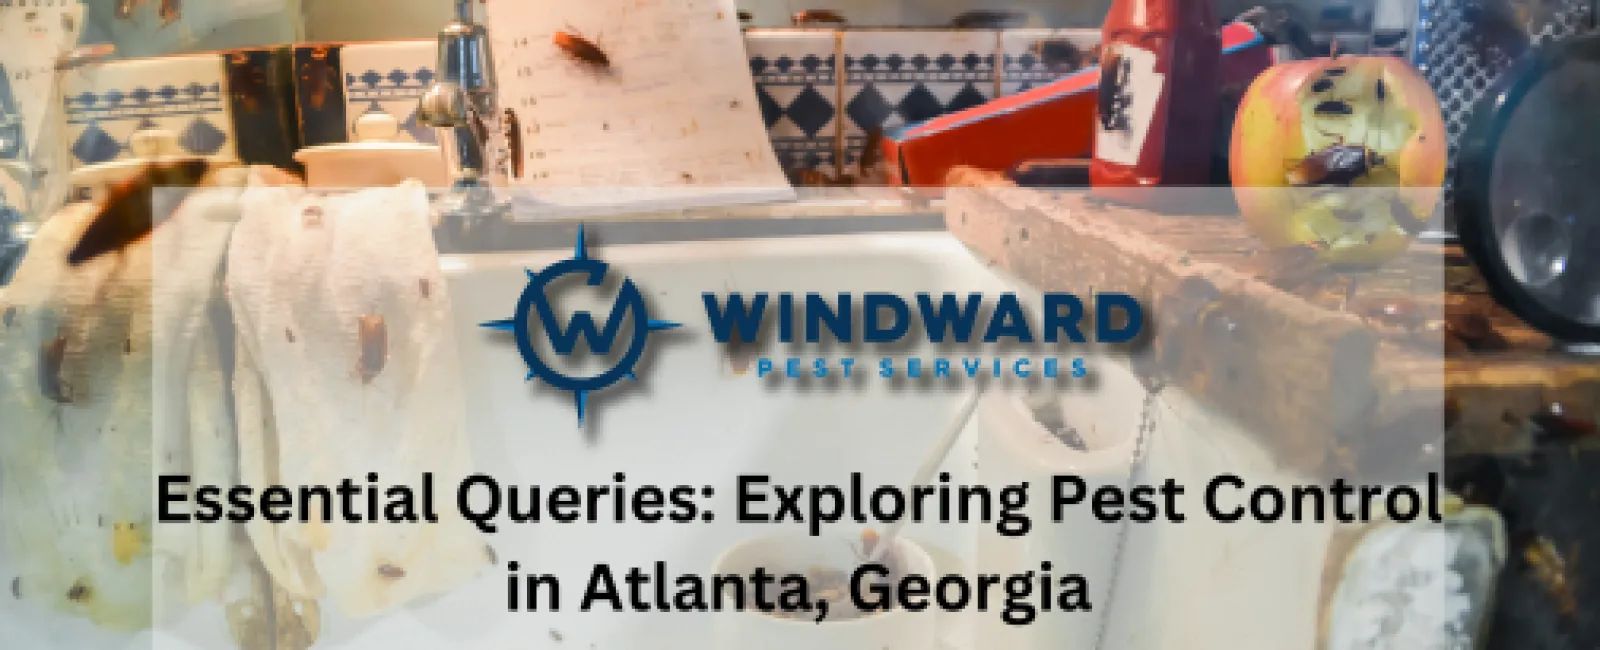 Essential Queries Exploring Pest Control in Atlanta, Georgia